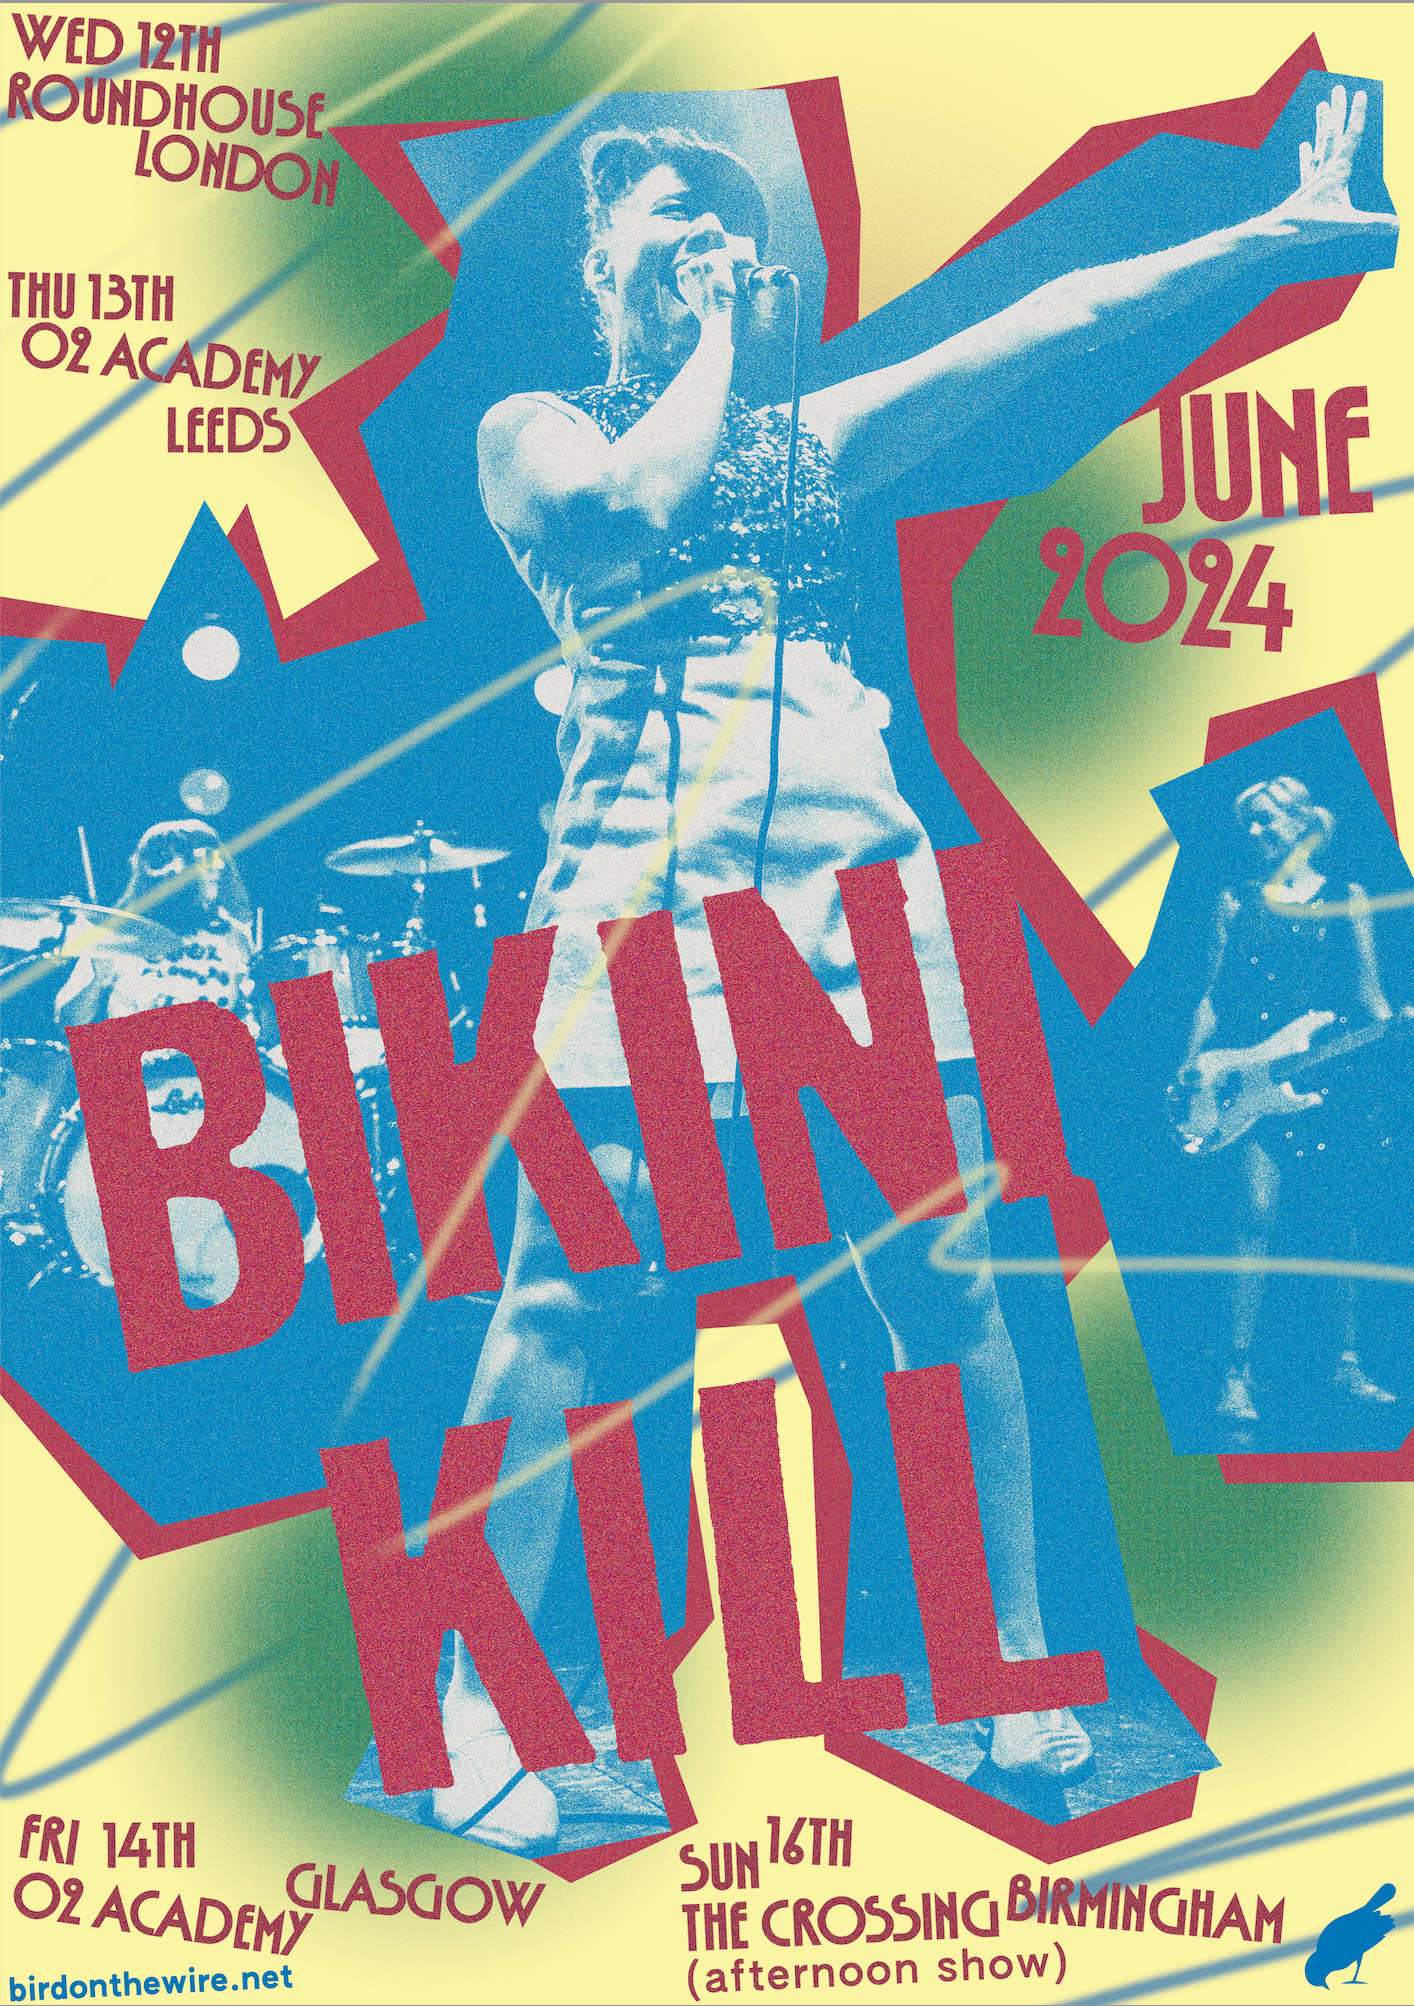 Bikini Kill 2024 tour poster